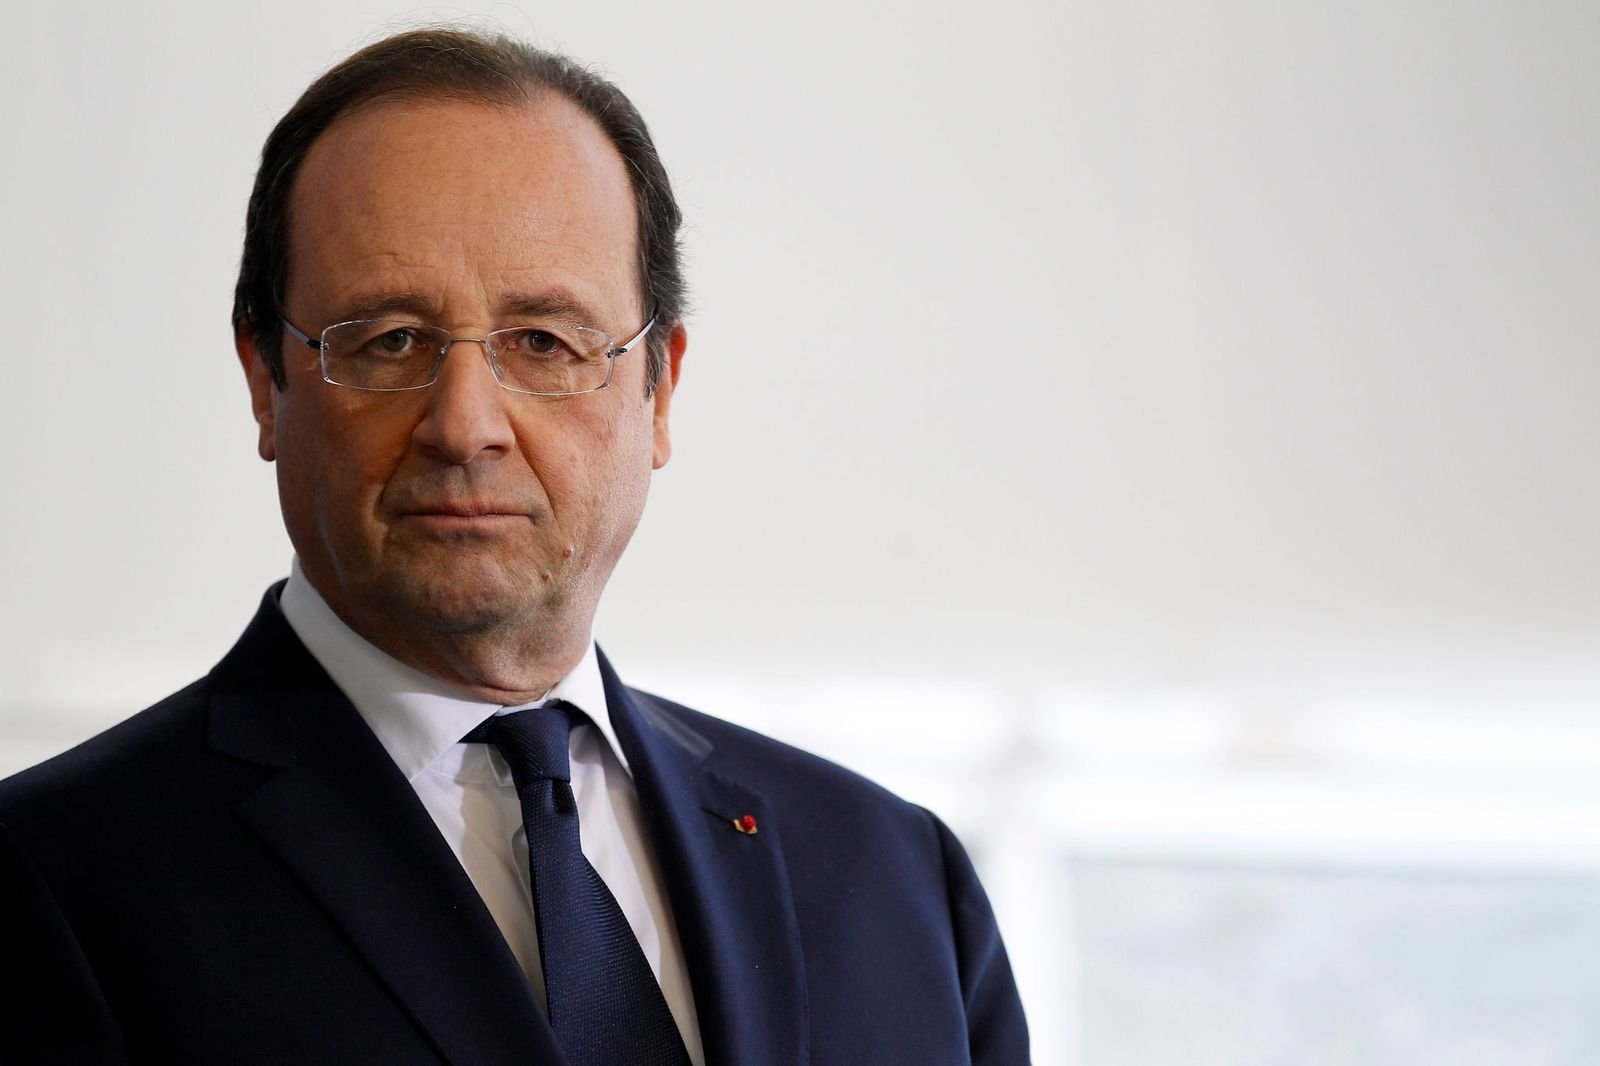 L'homme politique François Hollande | Photo : Getty Images